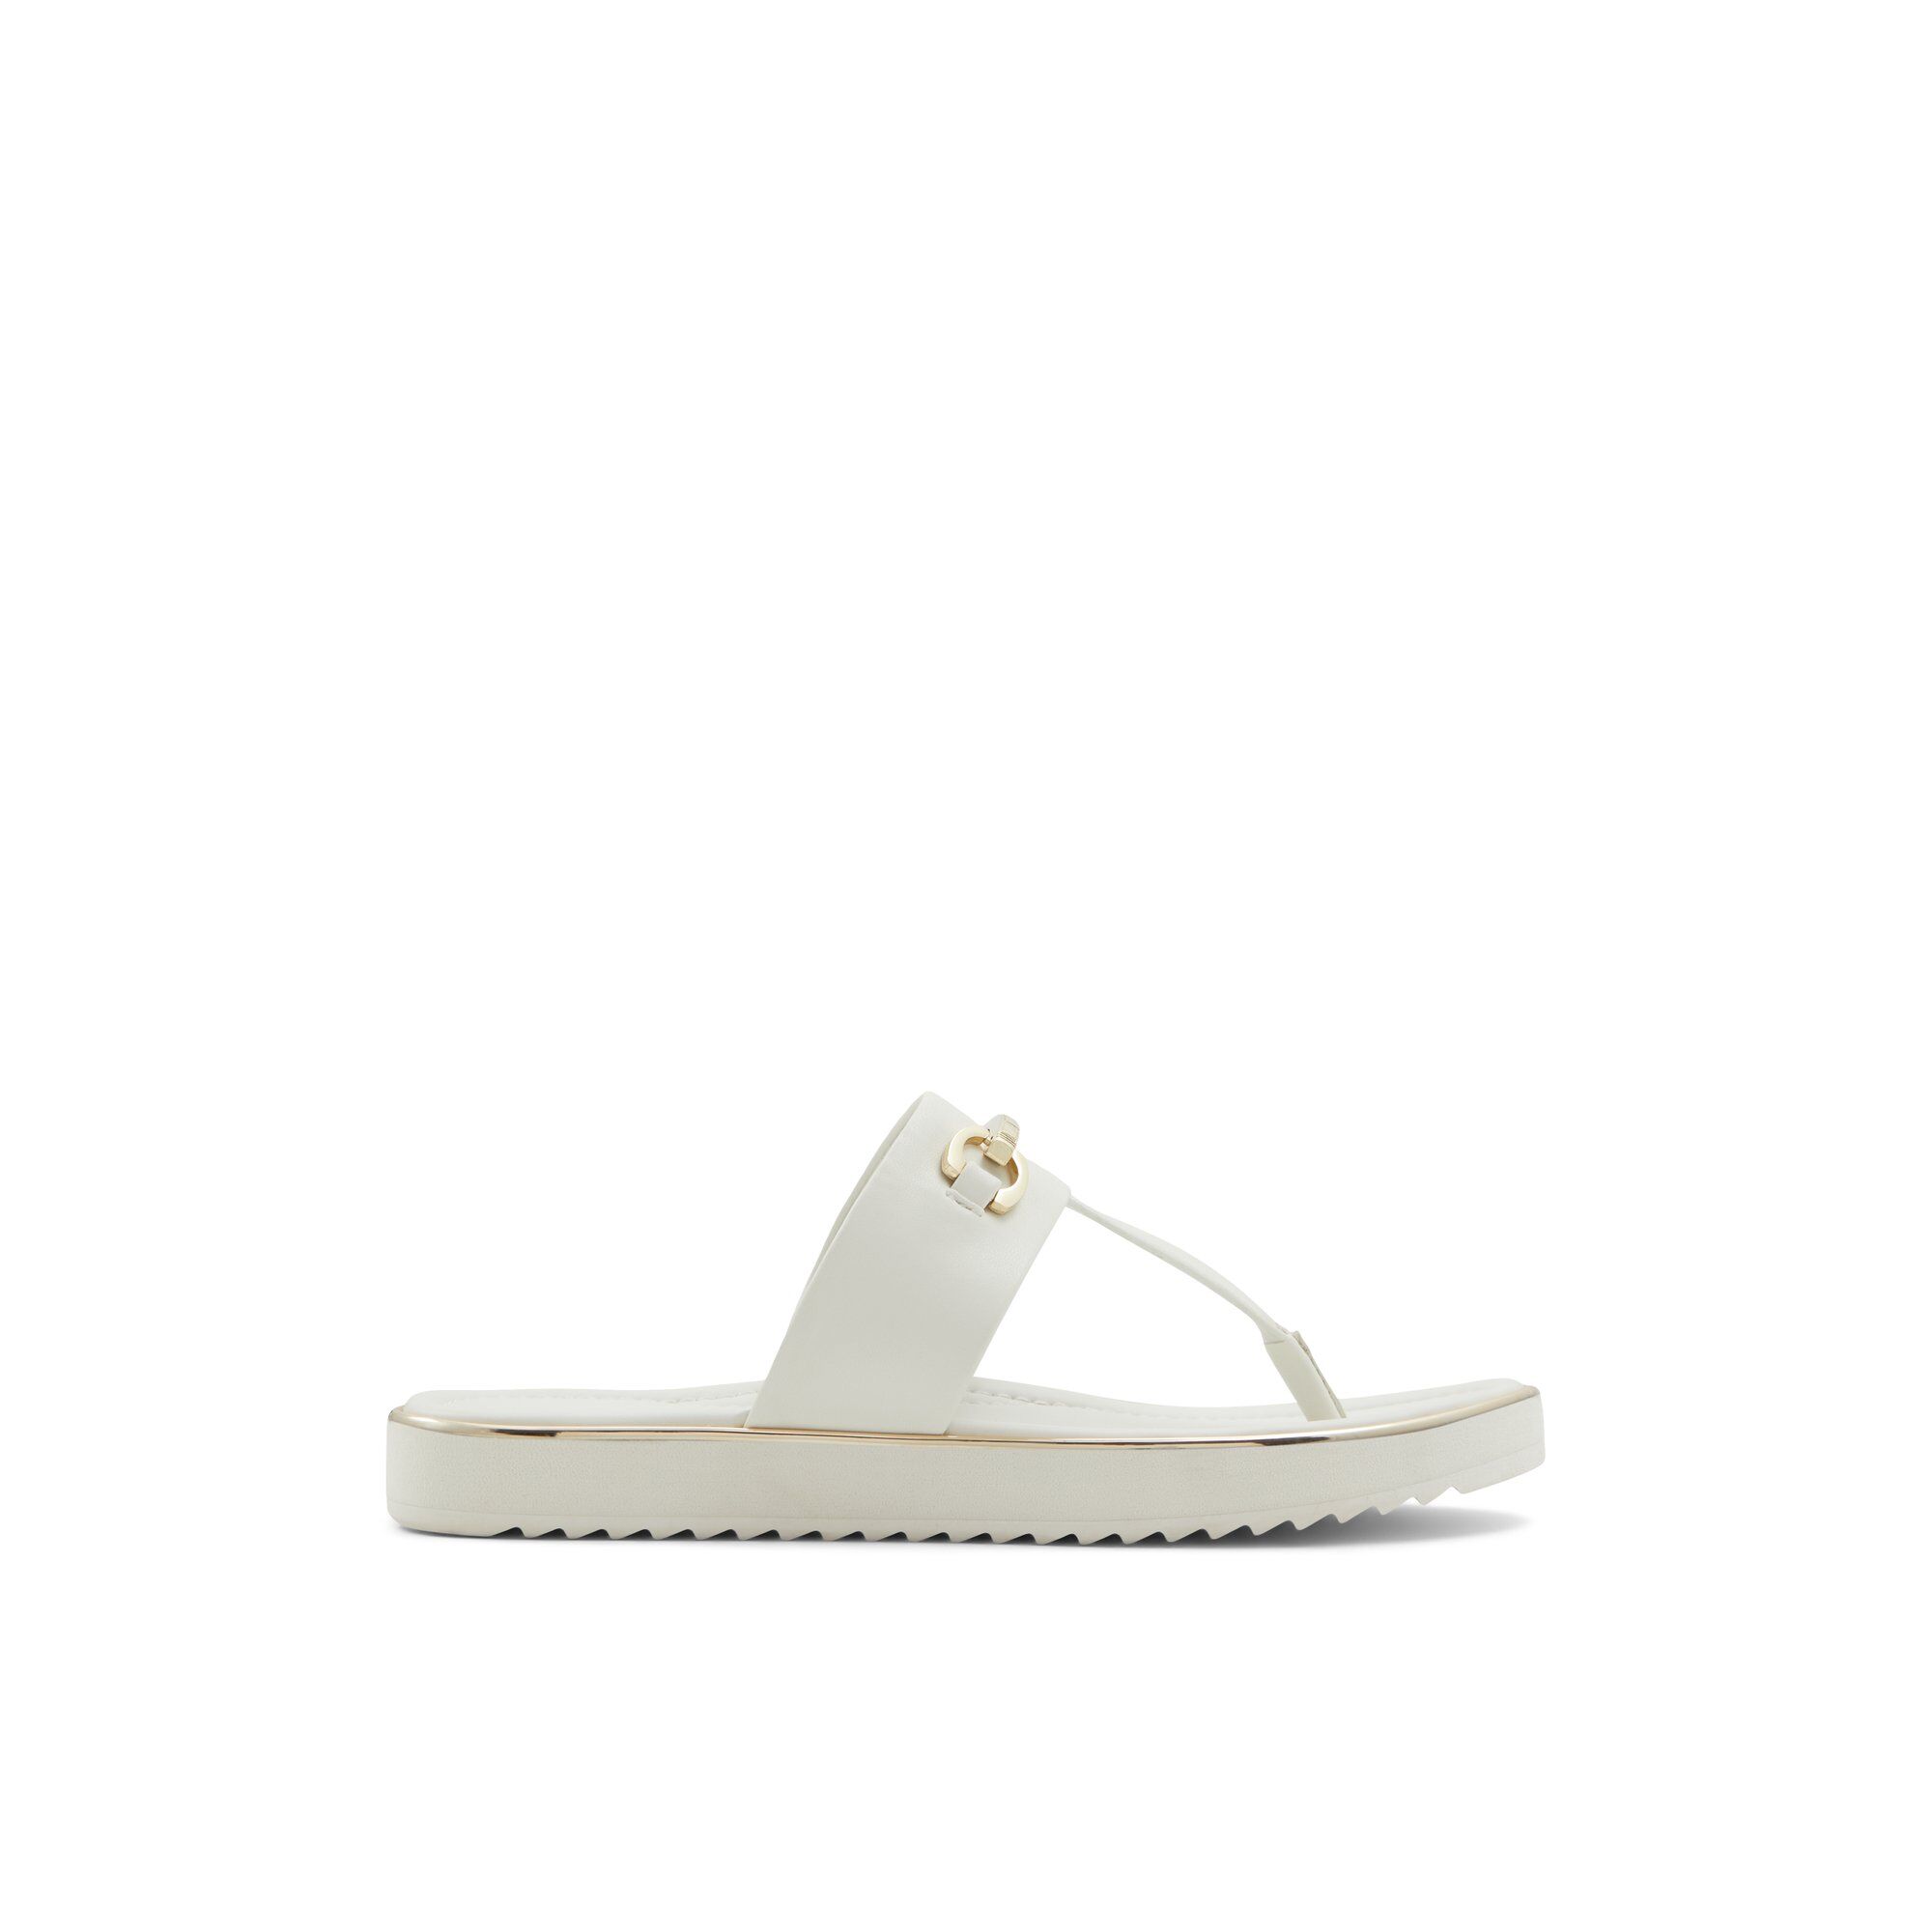 ALDO Deverena - Women's Flat Sandals - White, Size 10